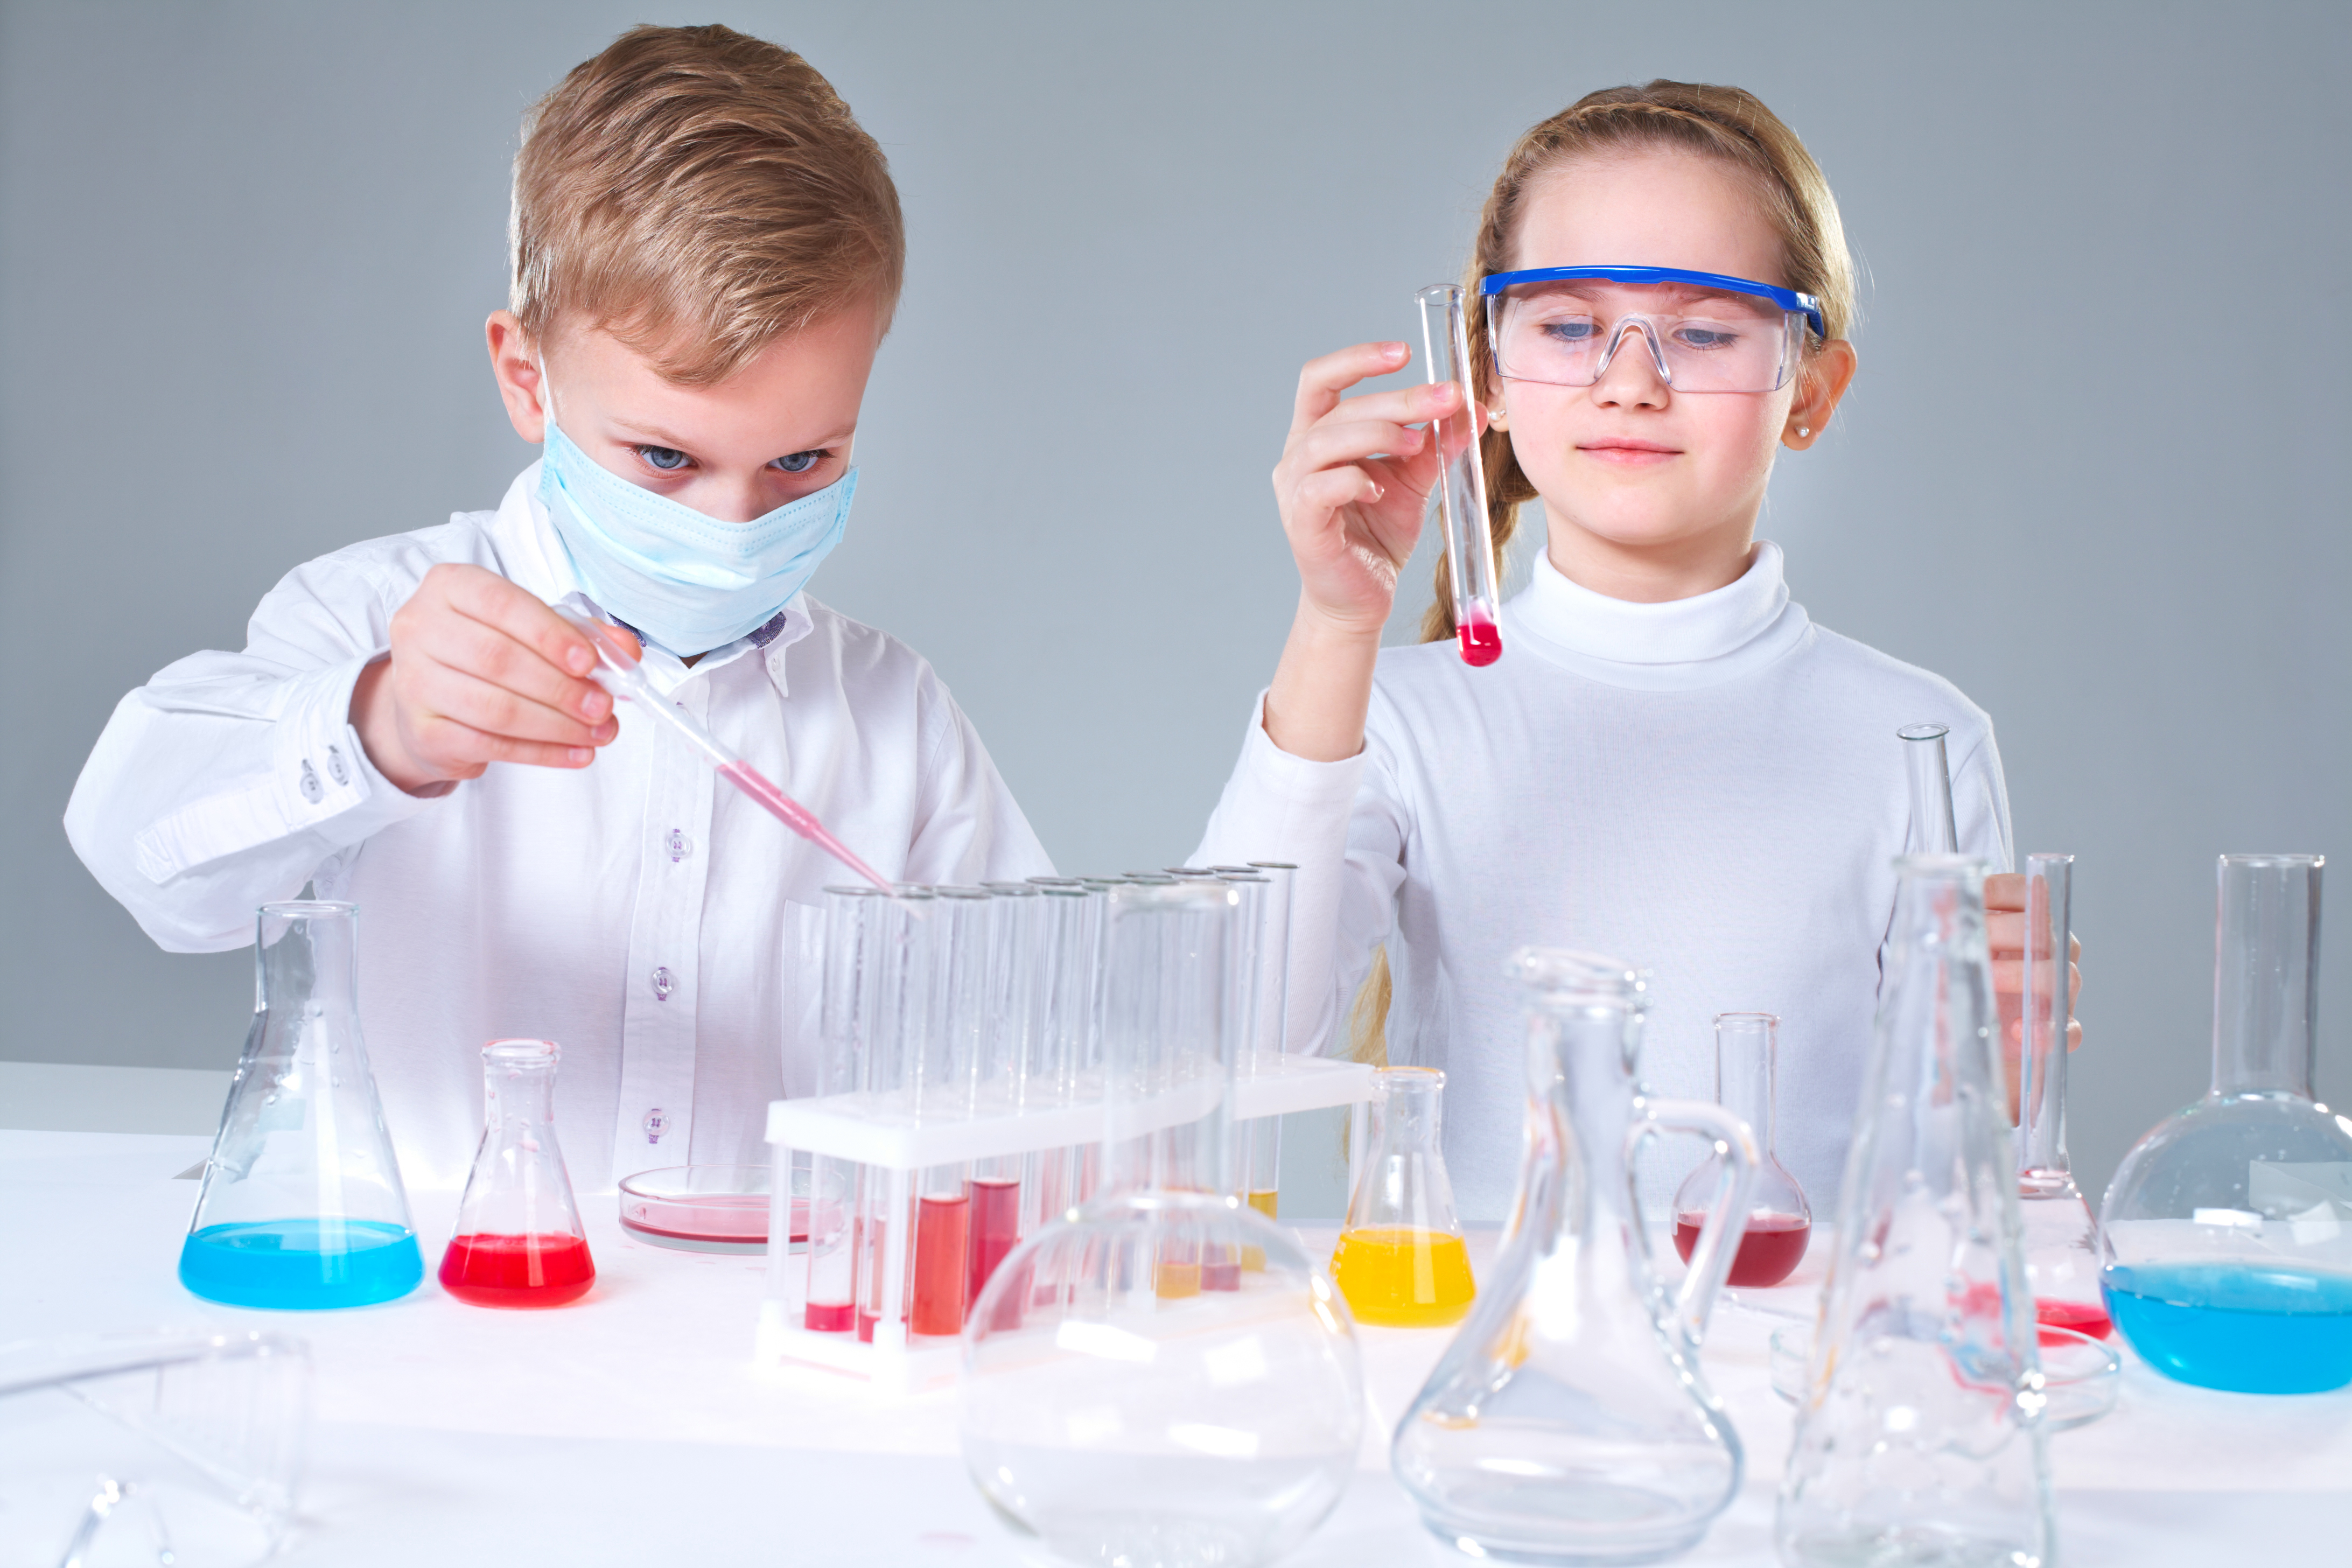 Изучение химии в школе. Научная лаборатория для детей. Школьники в лаборатории. Наука для детей. Лаборатория опытов для детей.